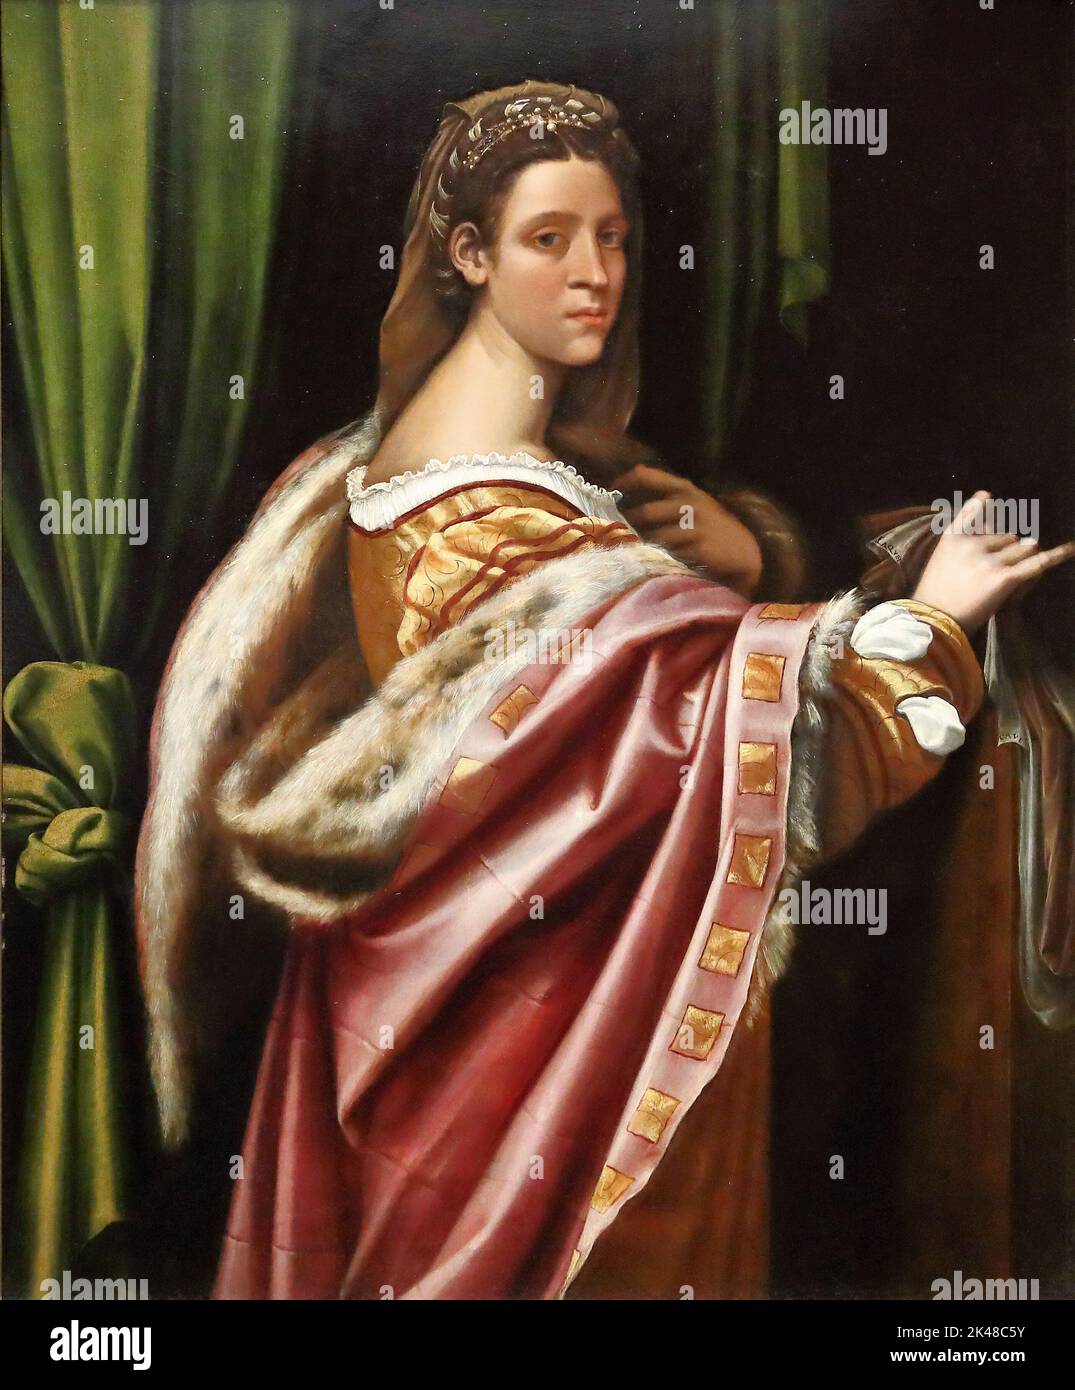 Porträt einer Dame des italienischen Hochrenaissance-Malers Sebastiano del Piombo in der National Gallery, London, Großbritannien Stockfoto